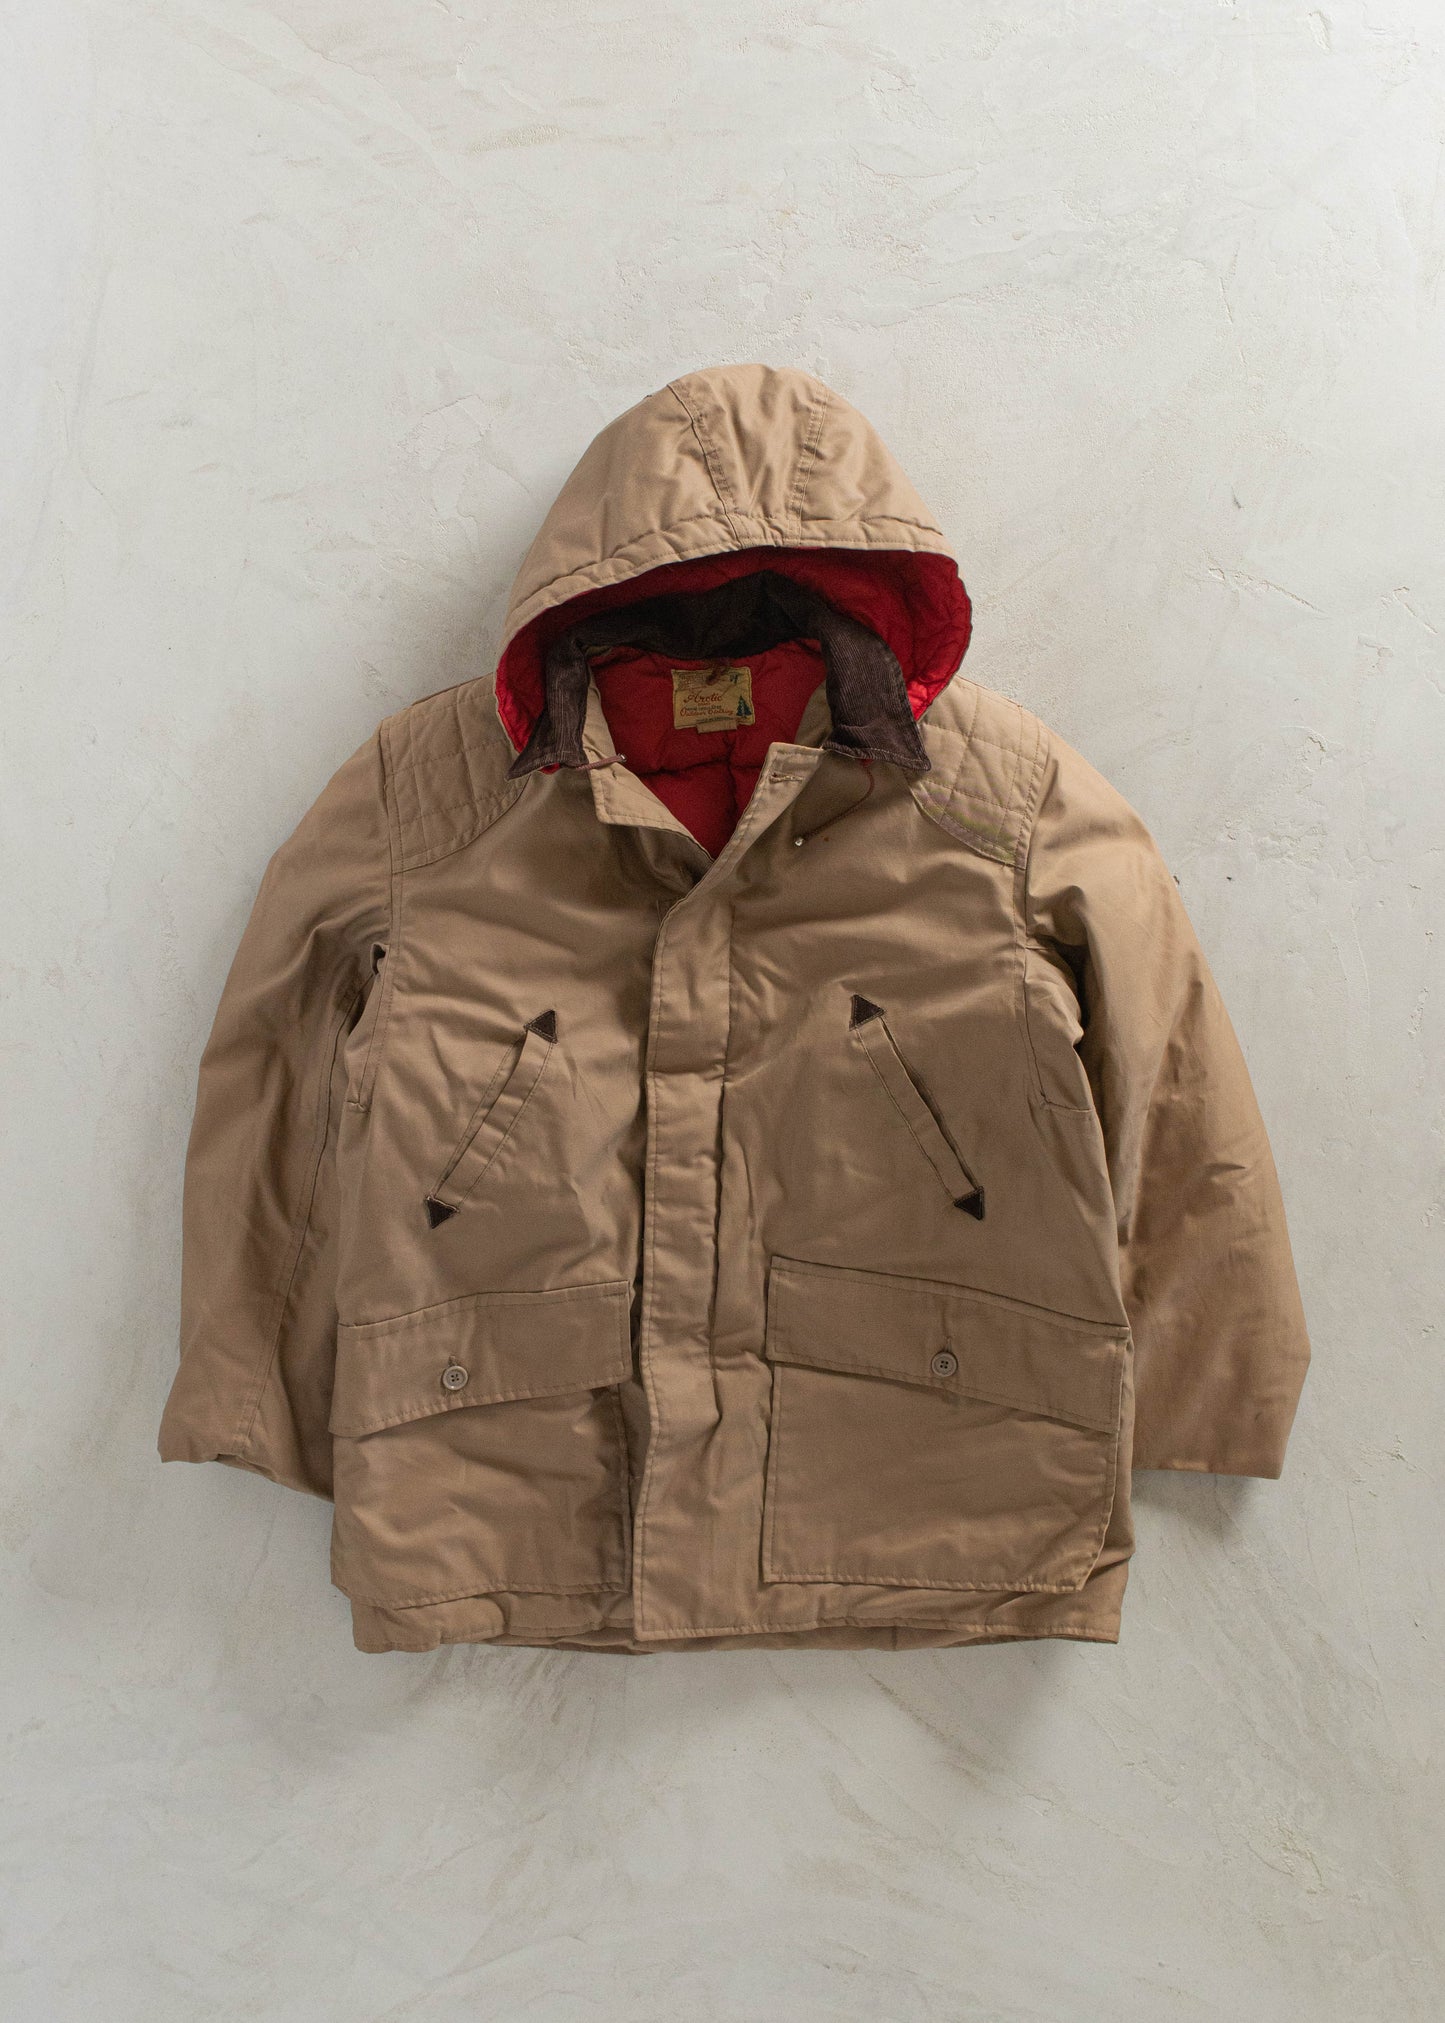 1980s Woods Arctic brand Down Parka Jacket Size L/XL